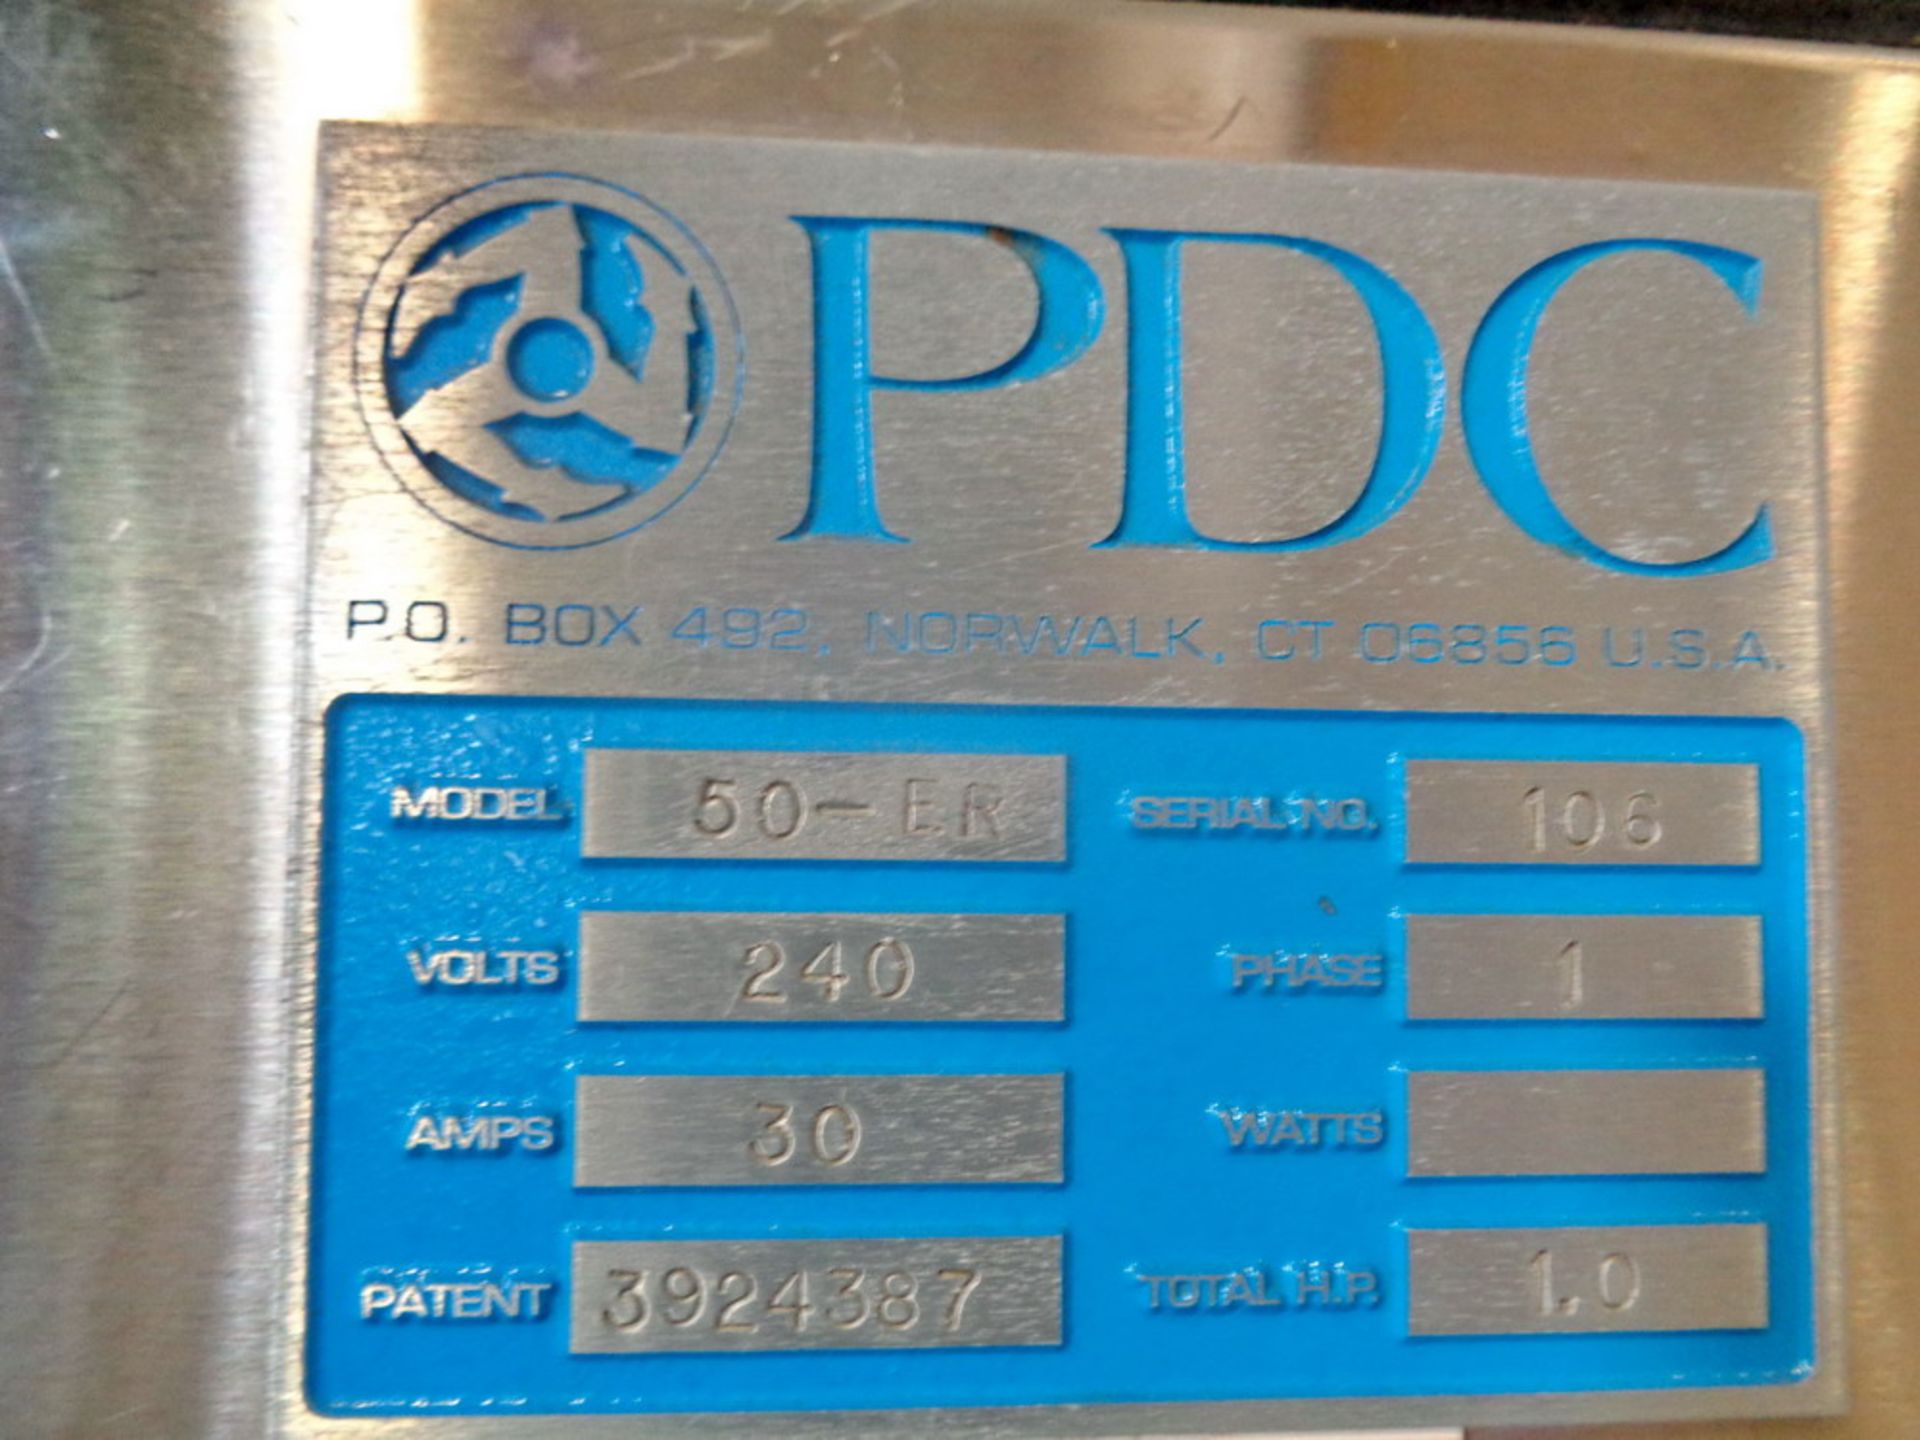 PDC Neck Bander, Model 50-ER, S/N 106 - Image 8 of 8